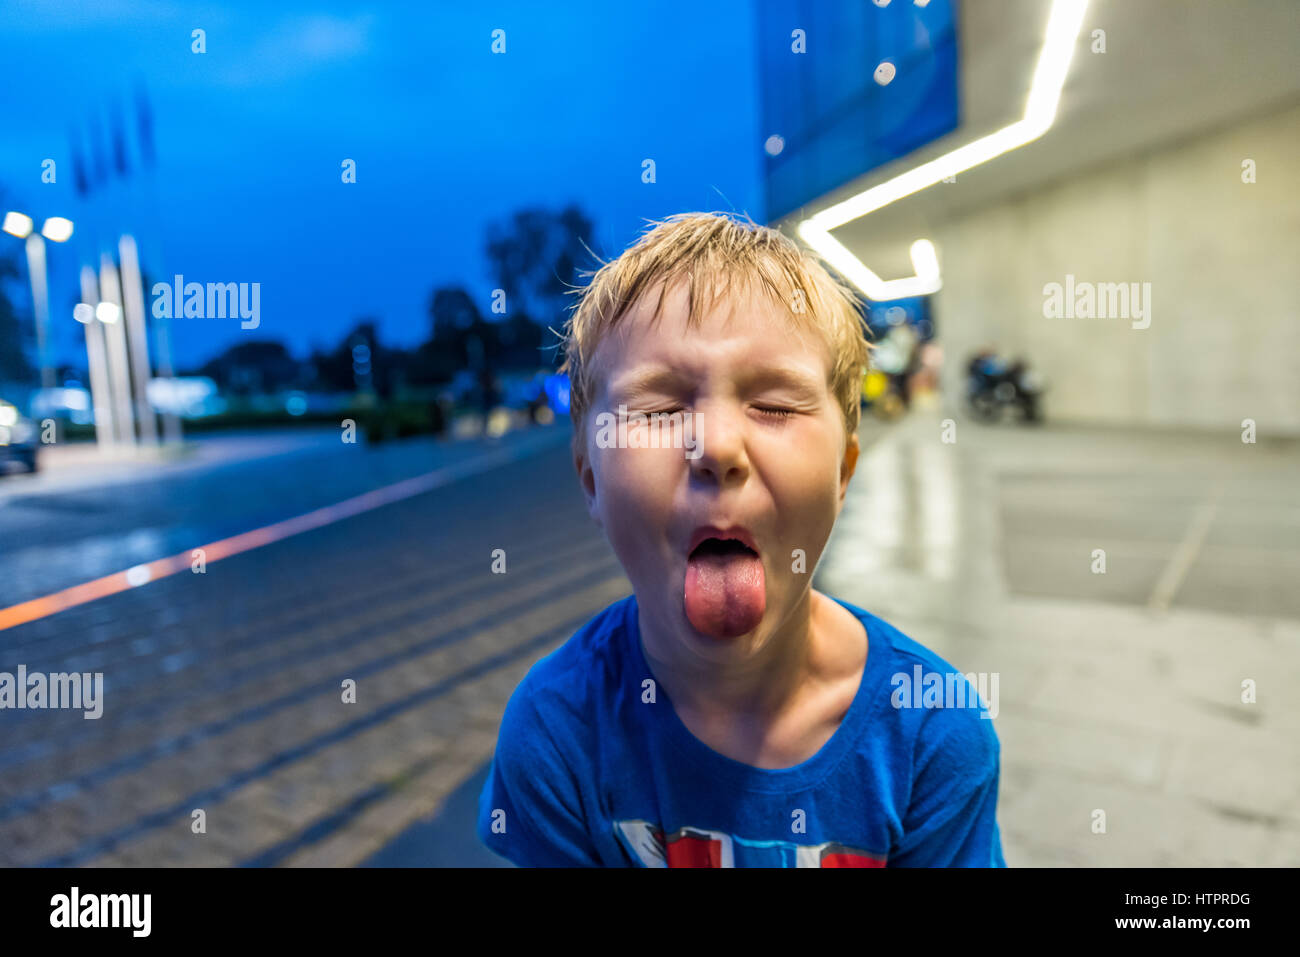 Petit garçon montrant sa langue avec expression aponévrotique. Banque D'Images